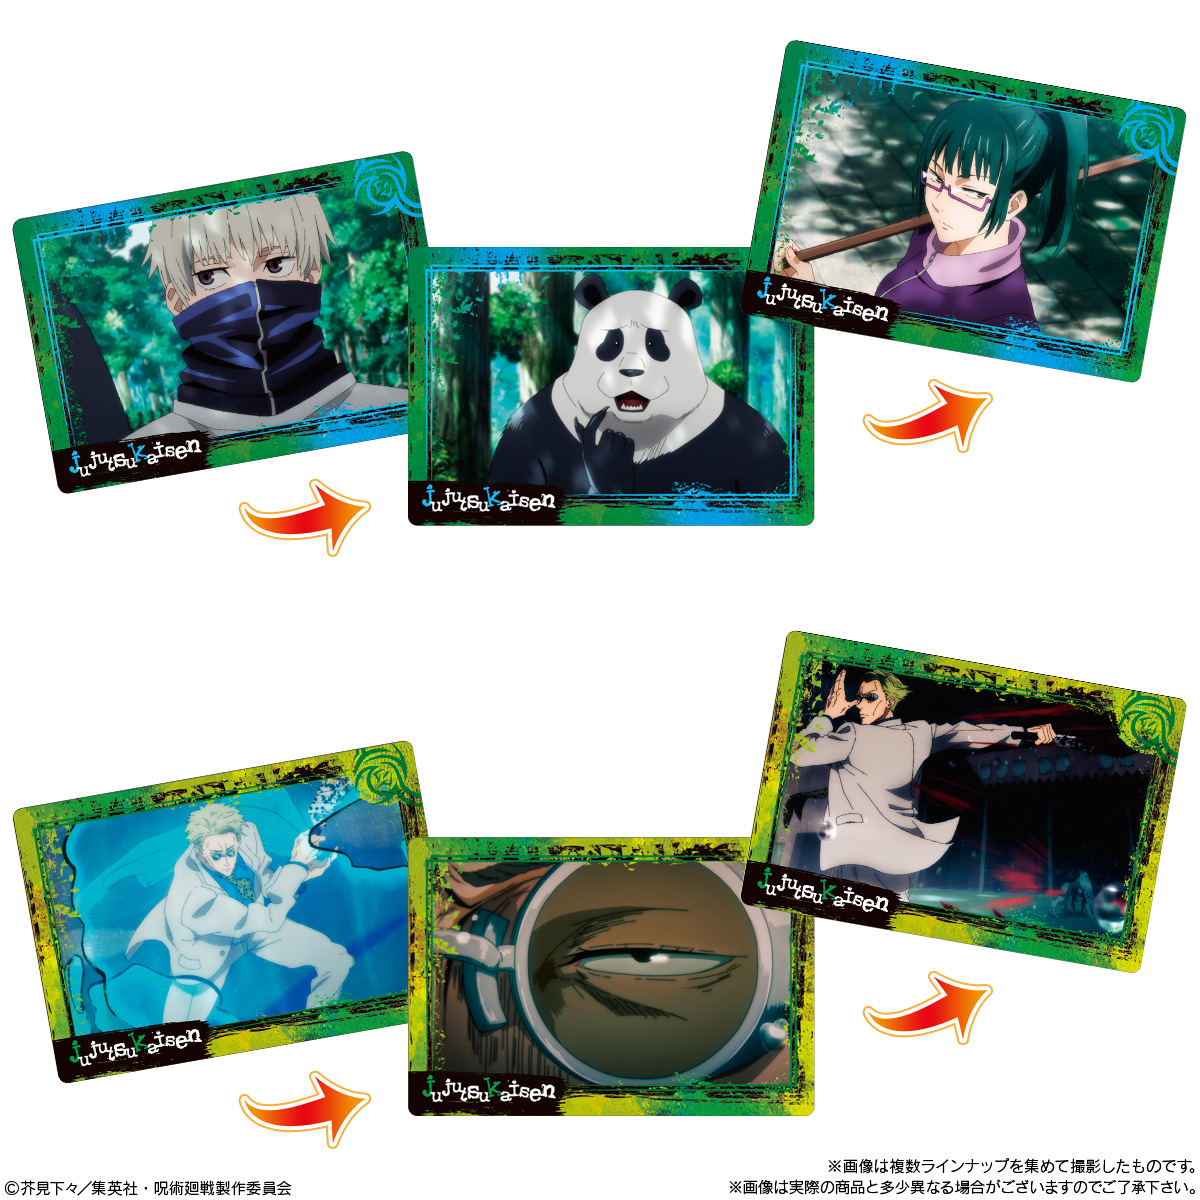 【食玩】呪術廻戦『呪術廻戦 PLAY BACKカードチョコスナック』10個入りBOX-007